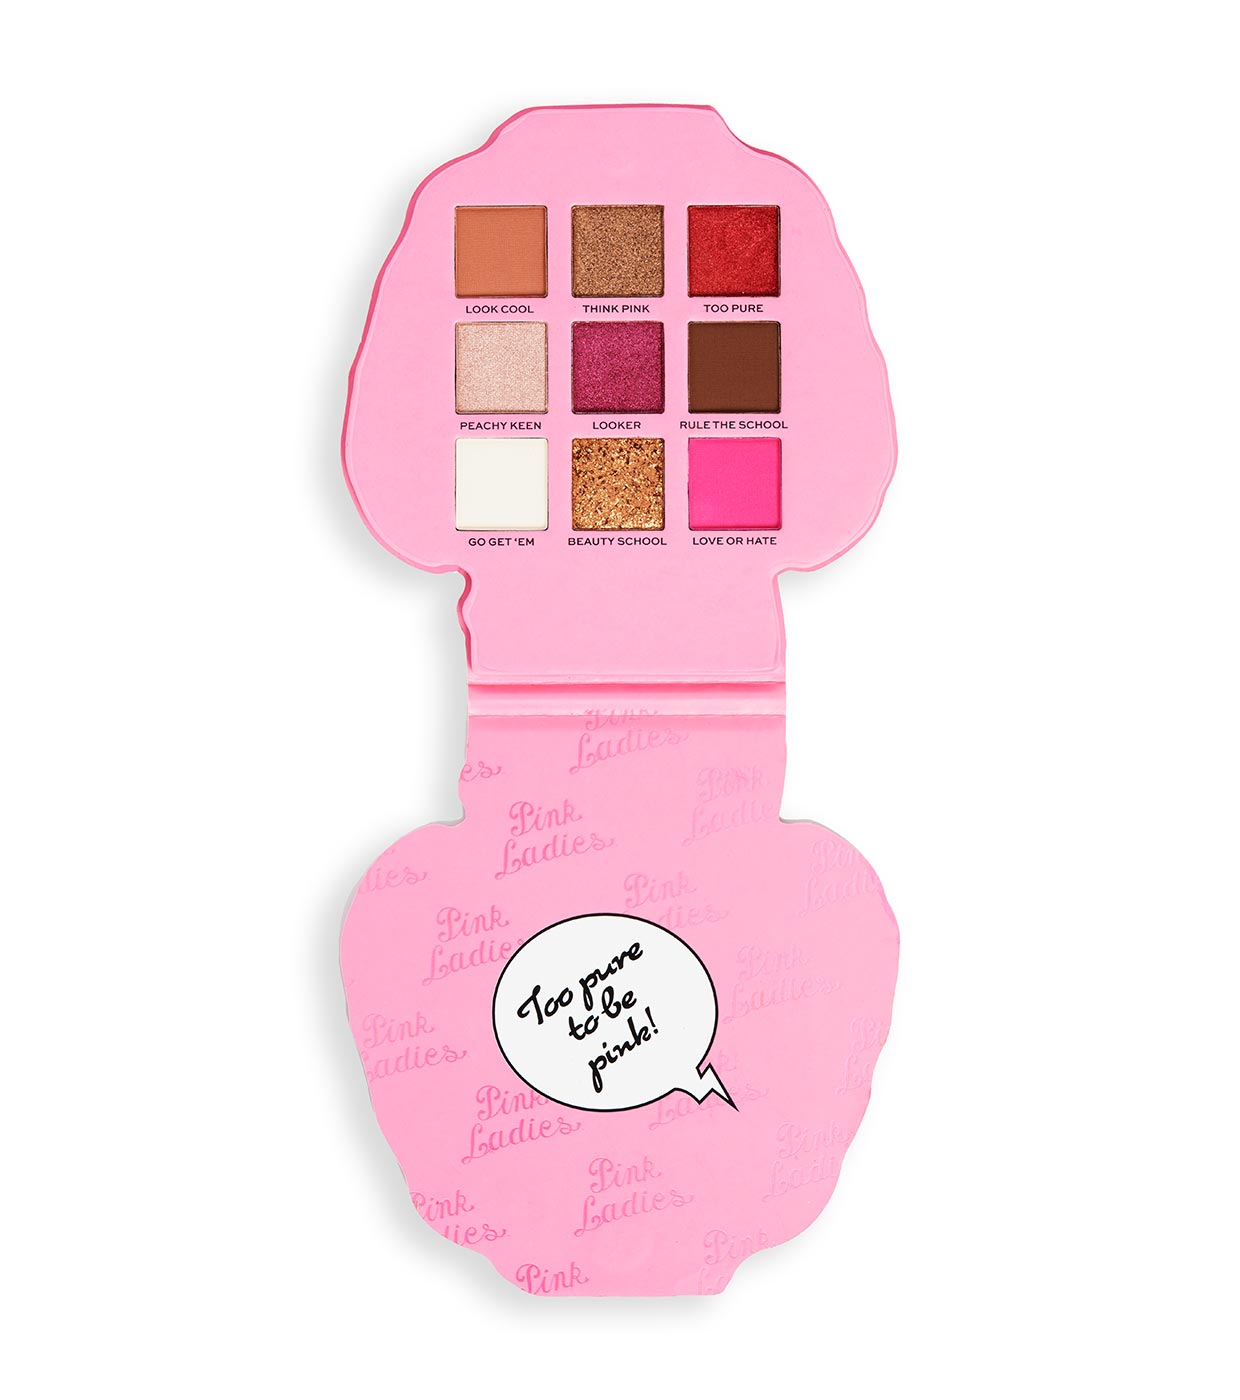 Buy Revolution - *Grease* - Eyeshadow Palette Pink Ladies